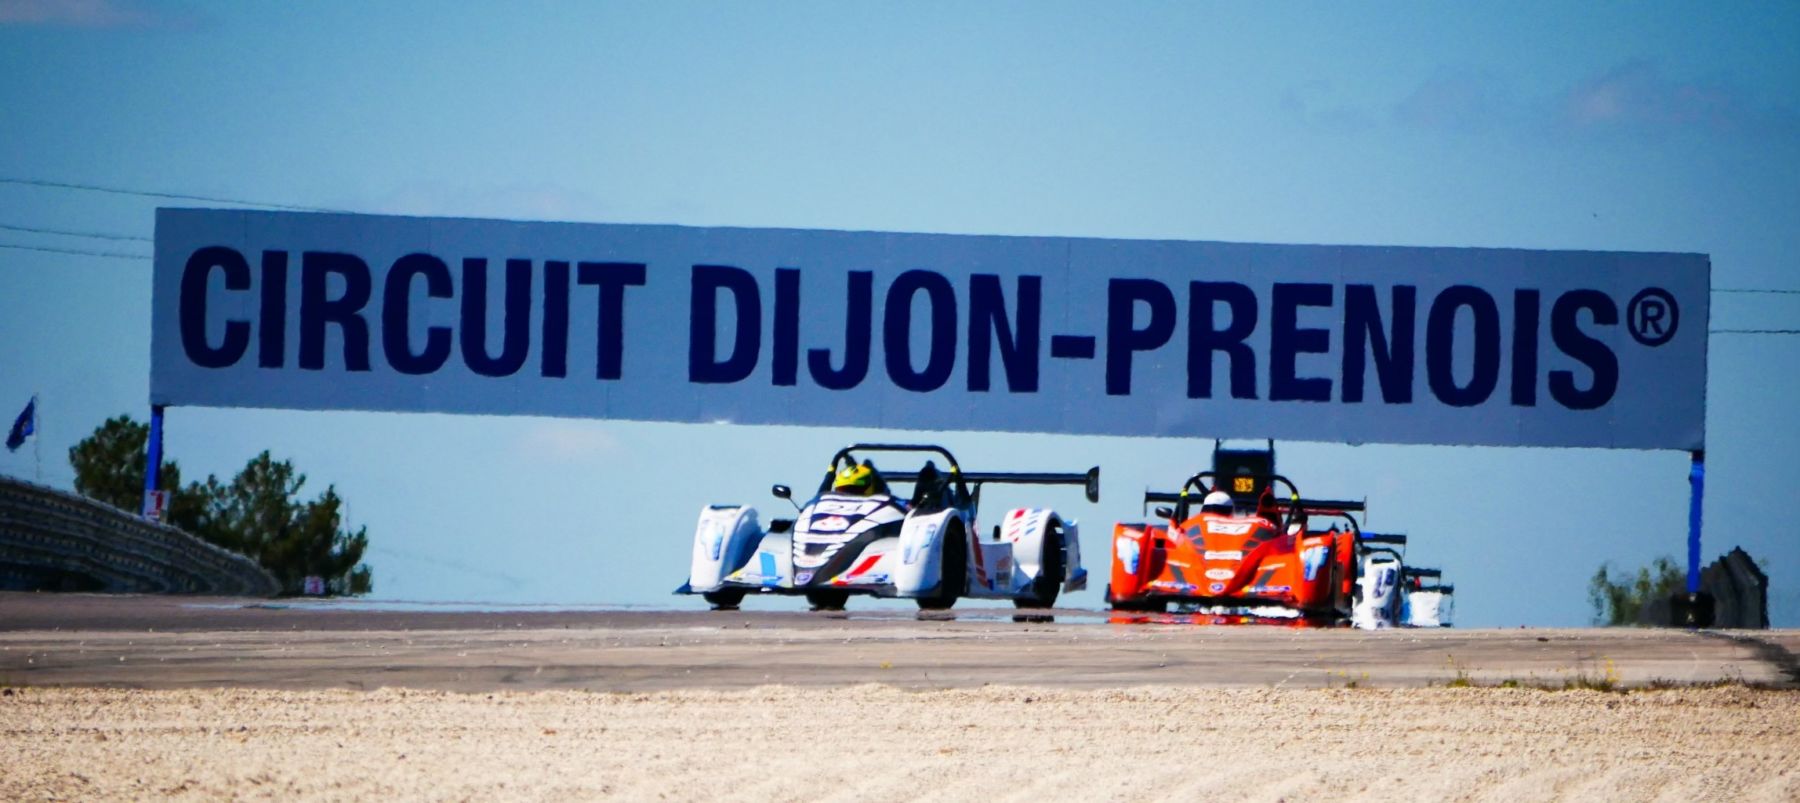 Xavier Fouineau et Jesse Bouhet se partagent les victoires à Dijon devant les pilotes « Espoirs »